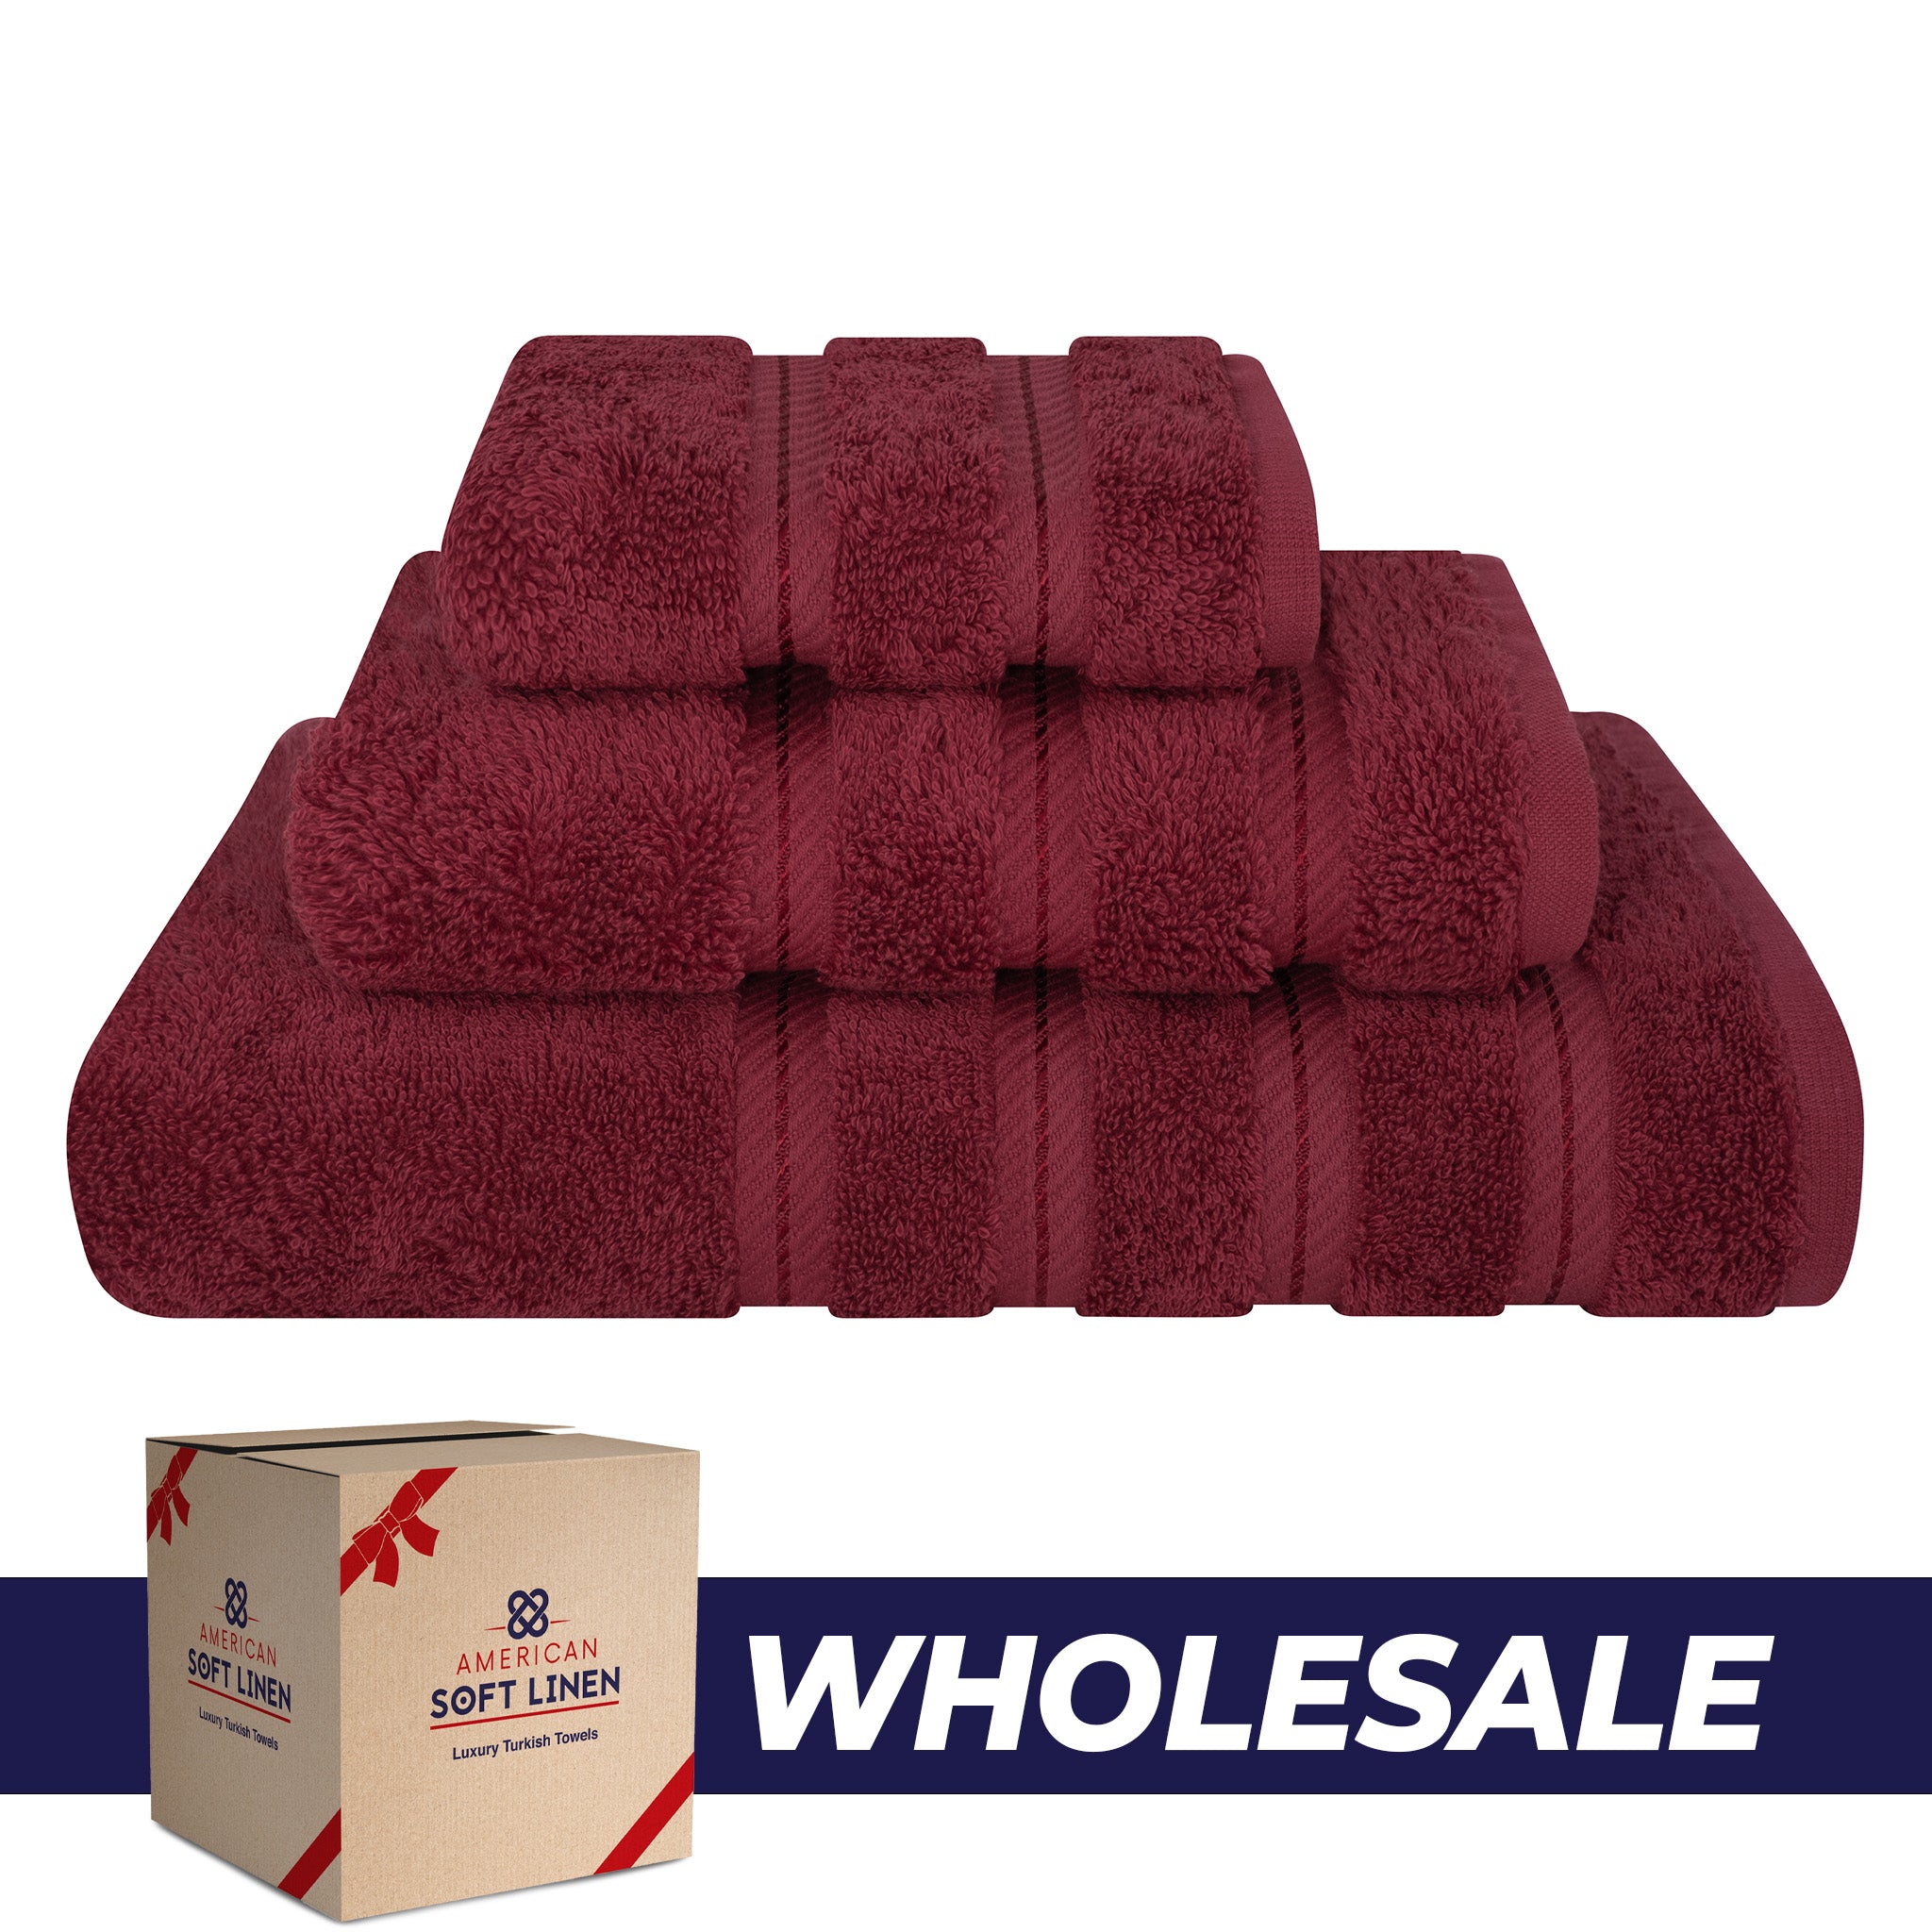 American Soft Linen 3 Piece Luxury Hotel Towel Set 20 set case pack bordeaux-red-0